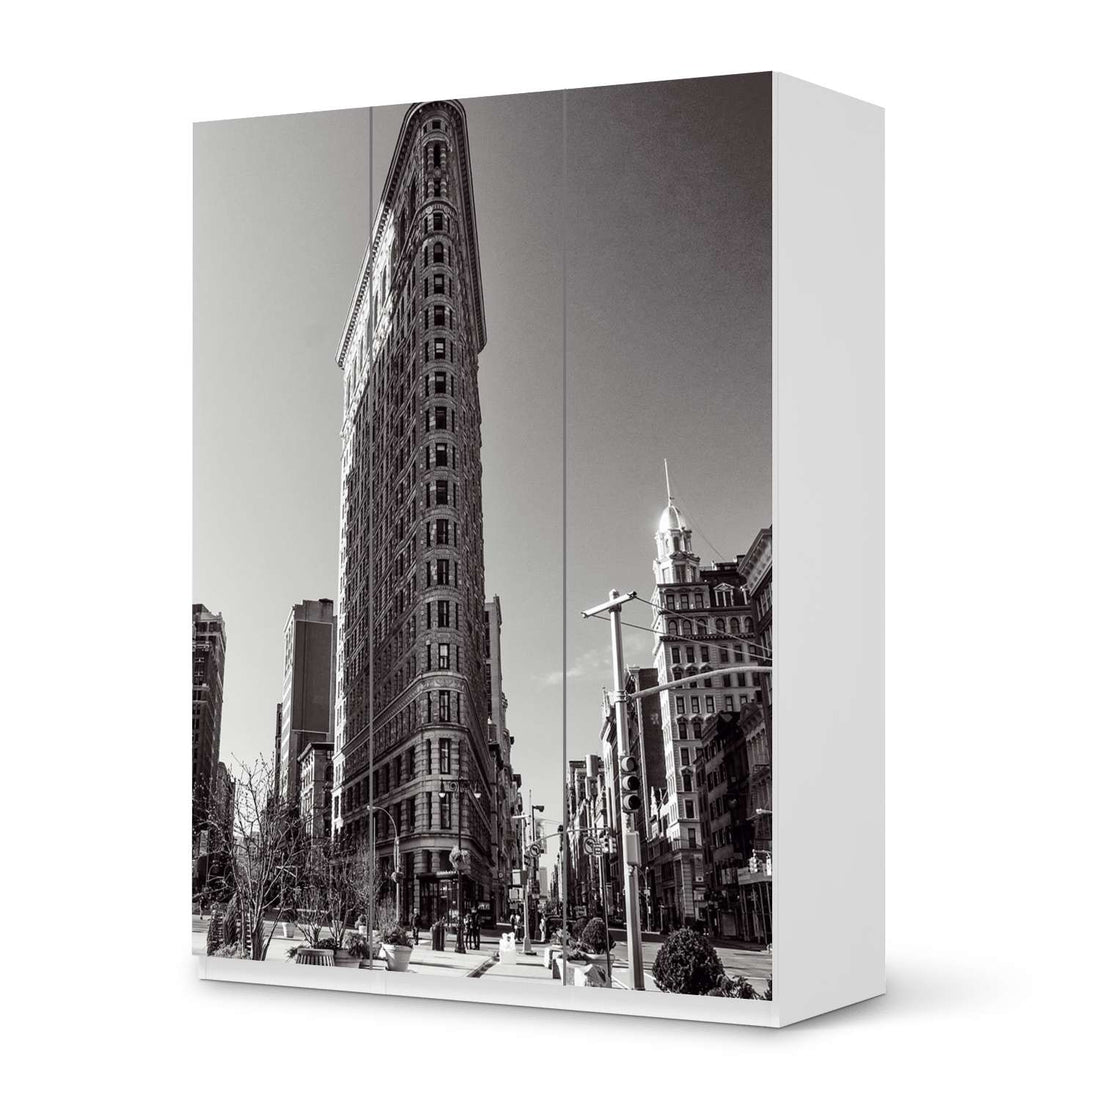 Folie für Möbel Manhattan - IKEA Pax Schrank 201 cm Höhe - 3 Türen - weiss